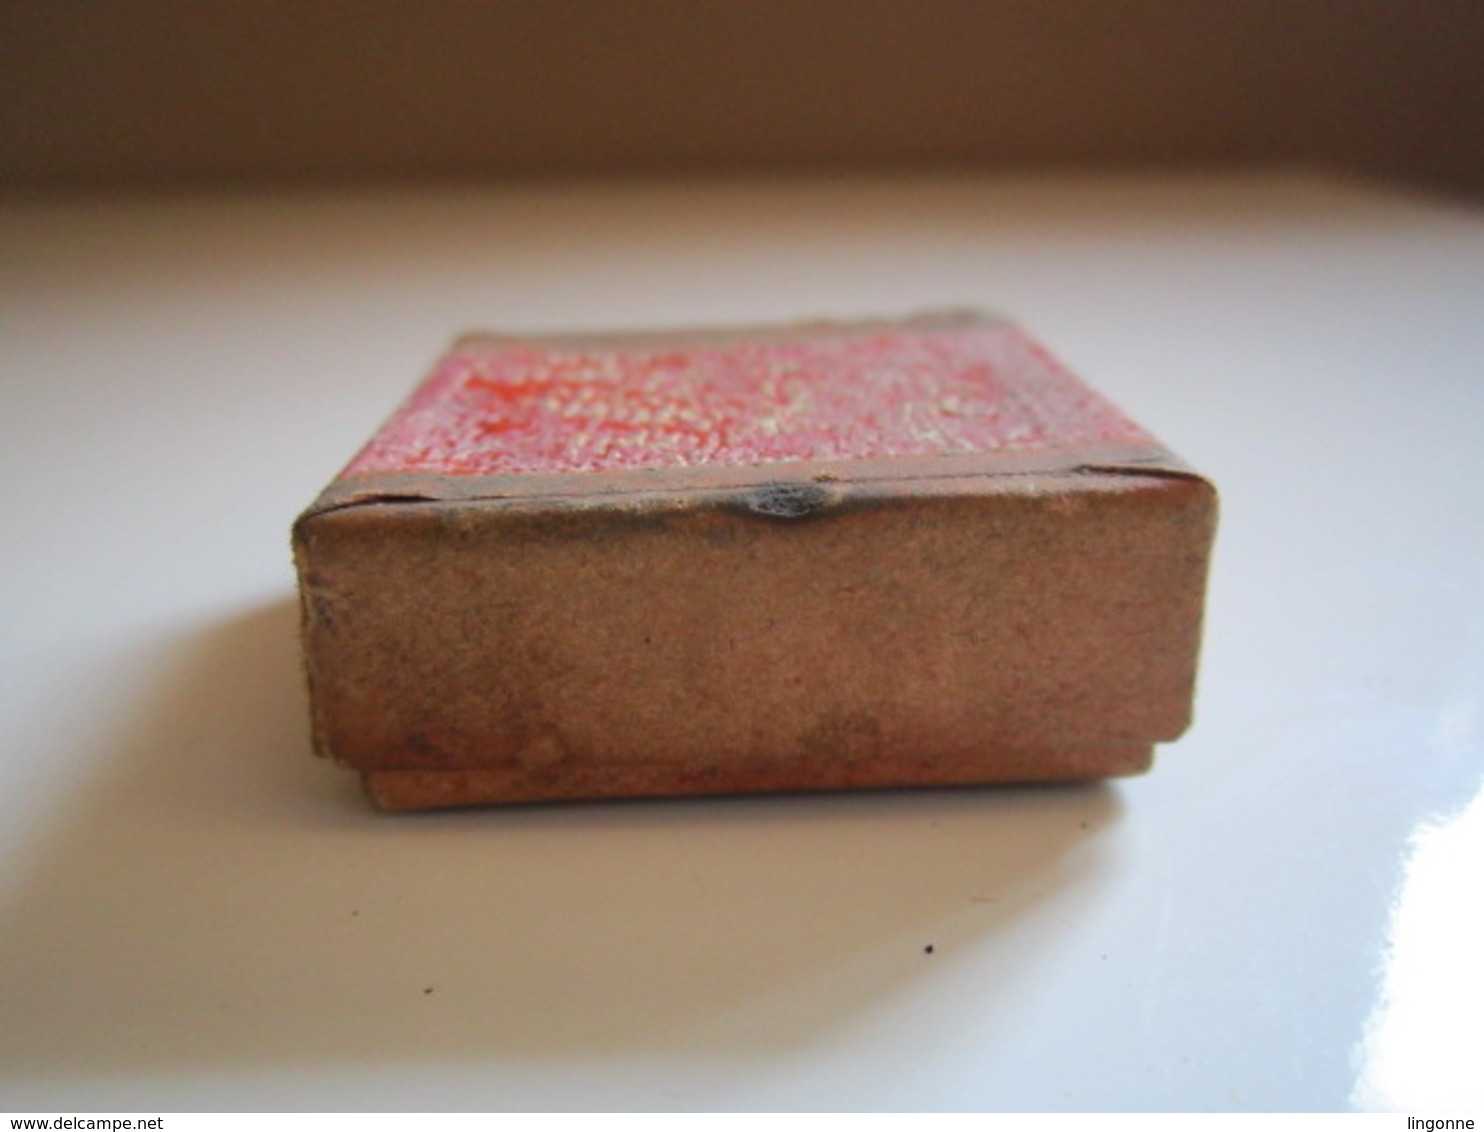 Ancienne boite carré en carton - 3,5 cm au carré